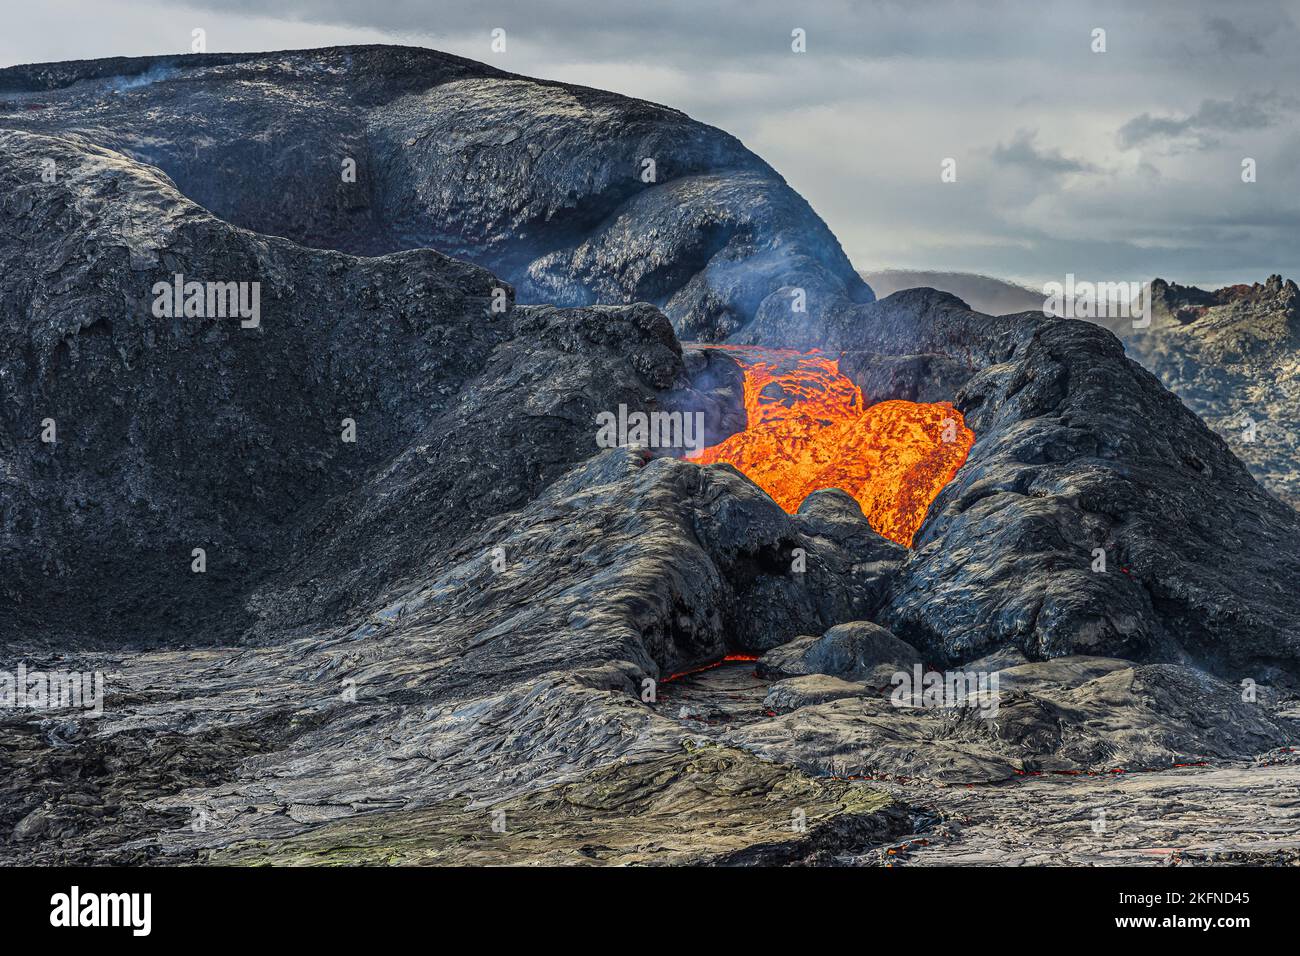 Sprudelnde Lava fließt aus einem aktiven vulkanischen Krater. Landschaft in Island auf der Halbinsel Reykjanes. Krater mit gekühltem und flüssigem Magmagestein. Wolken Stockfoto